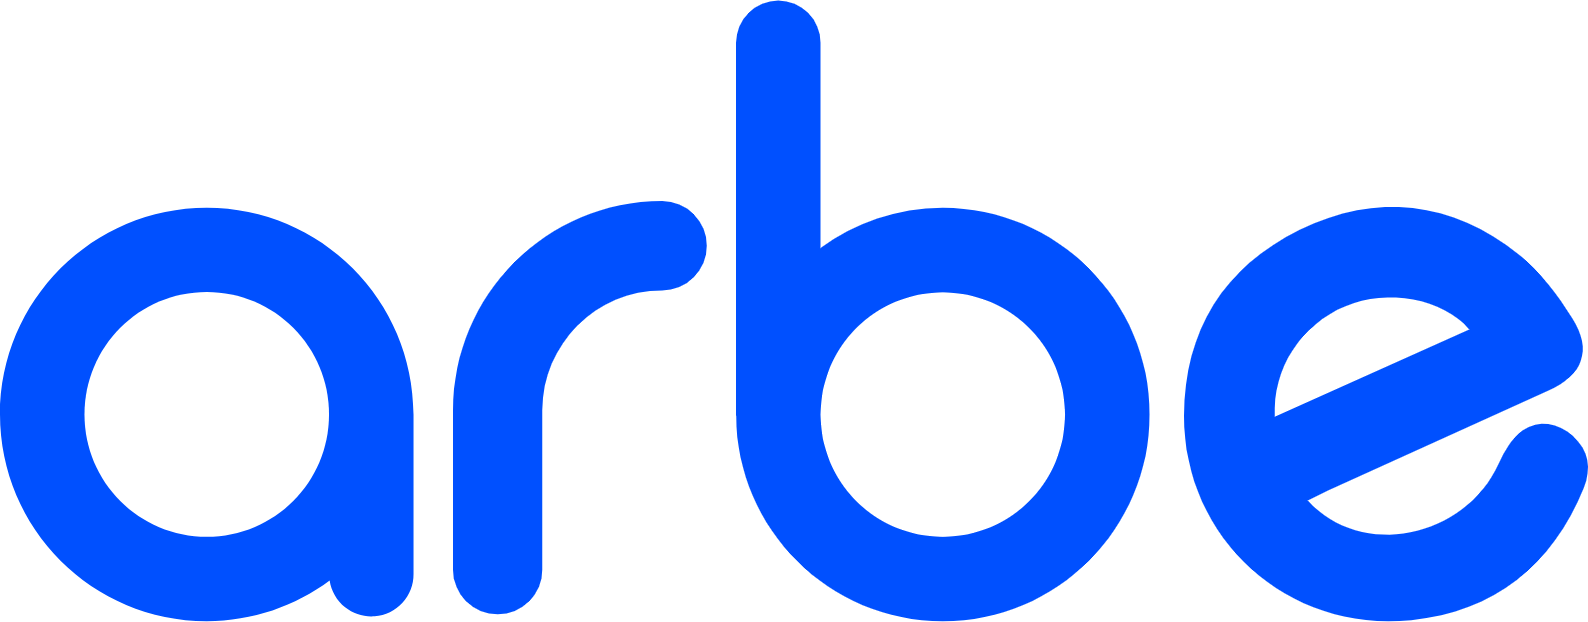 Arbe Robotics logo large (transparent PNG)